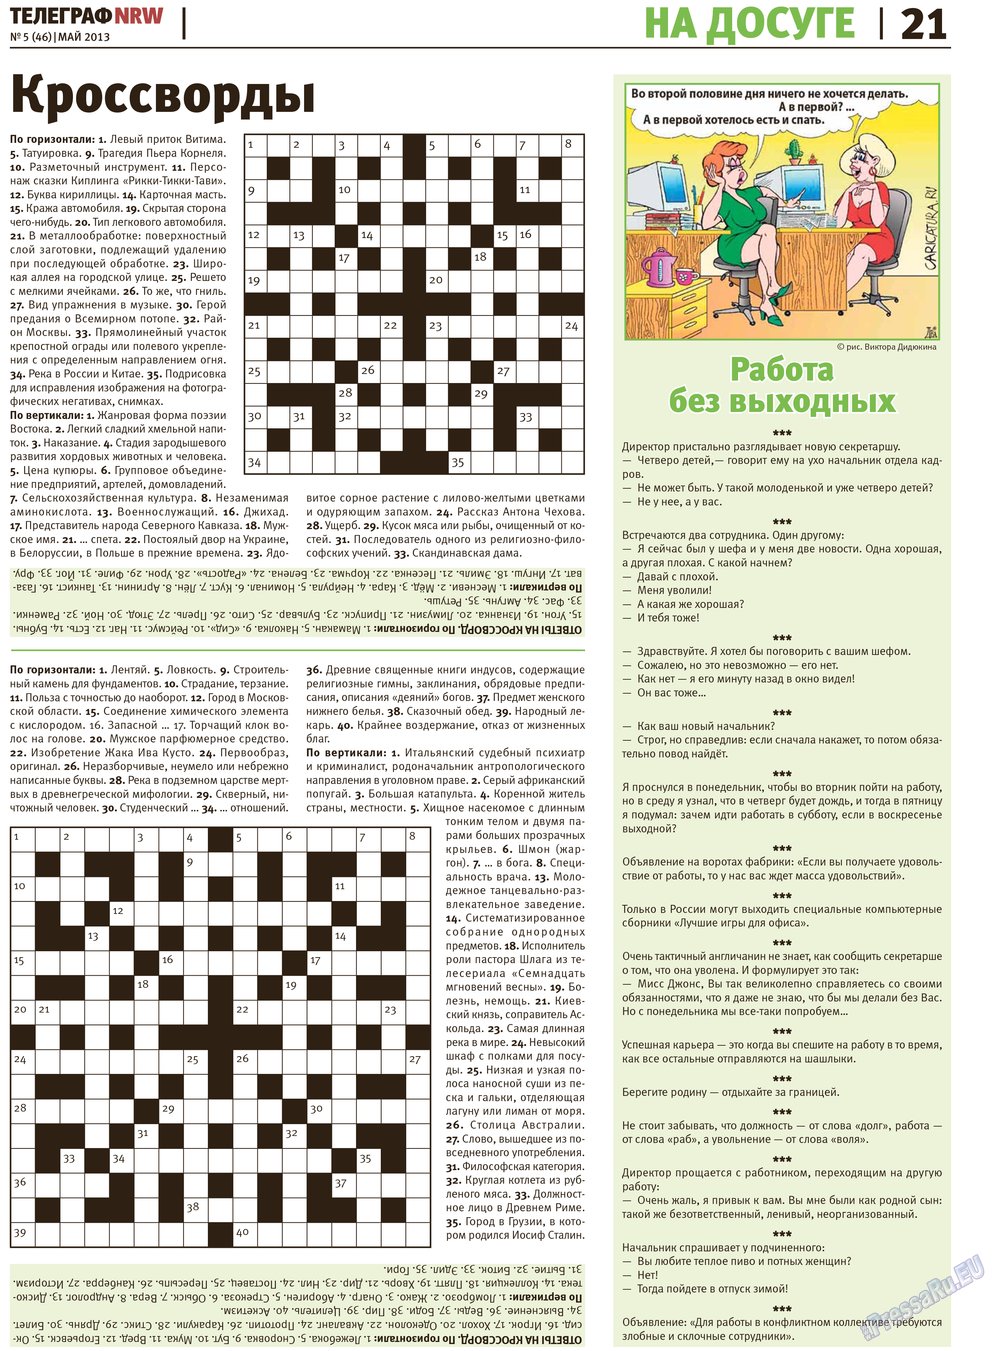 Телеграф NRW (газета). 2013 год, номер 5, стр. 21